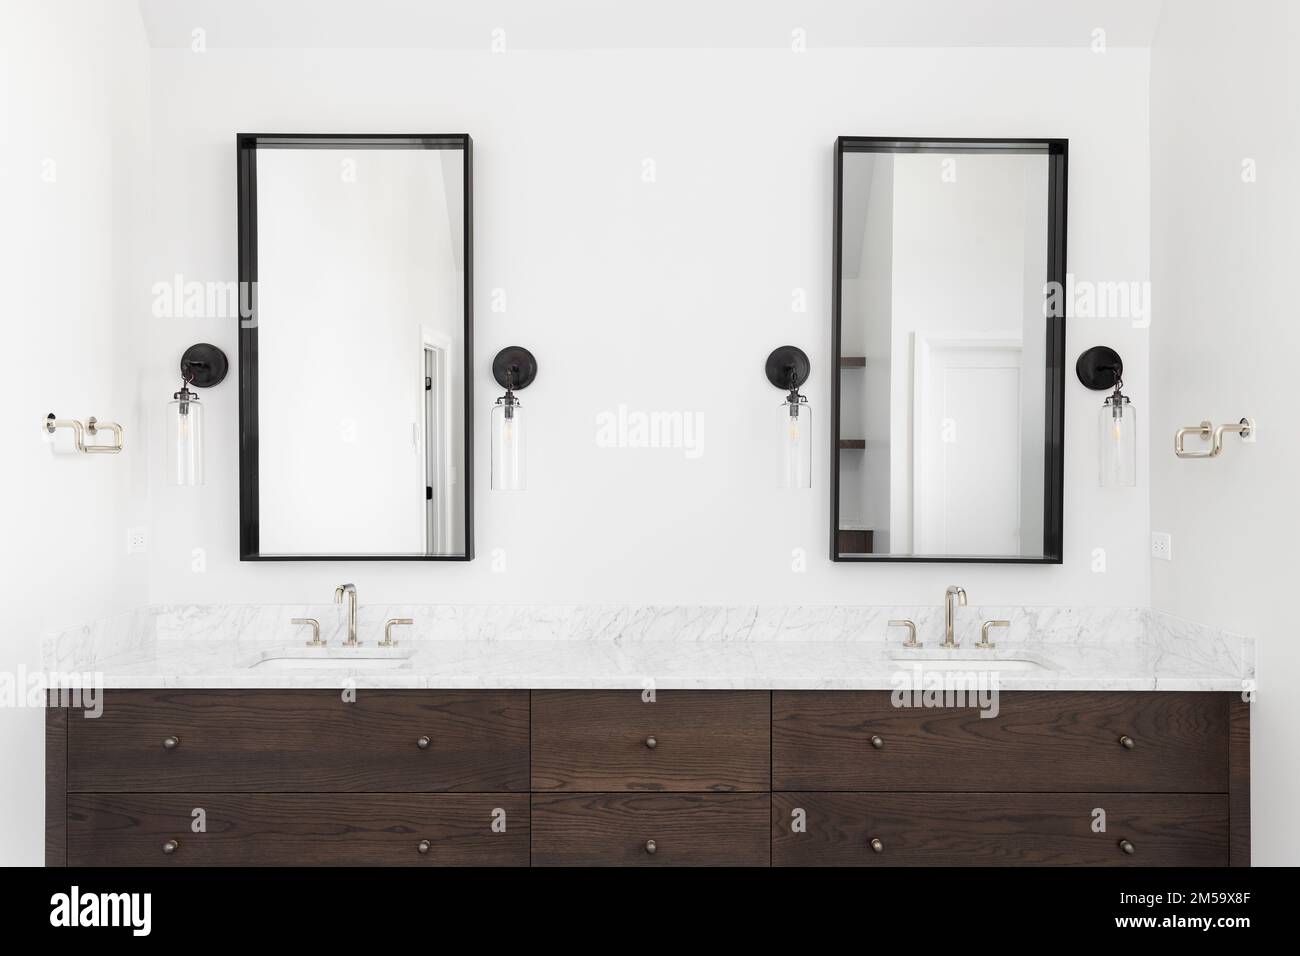 Une salle de bains de luxe avec une armoire en bois sombre, un comptoir en marbre et des lumières de conce autour des miroirs carrés. Banque D'Images